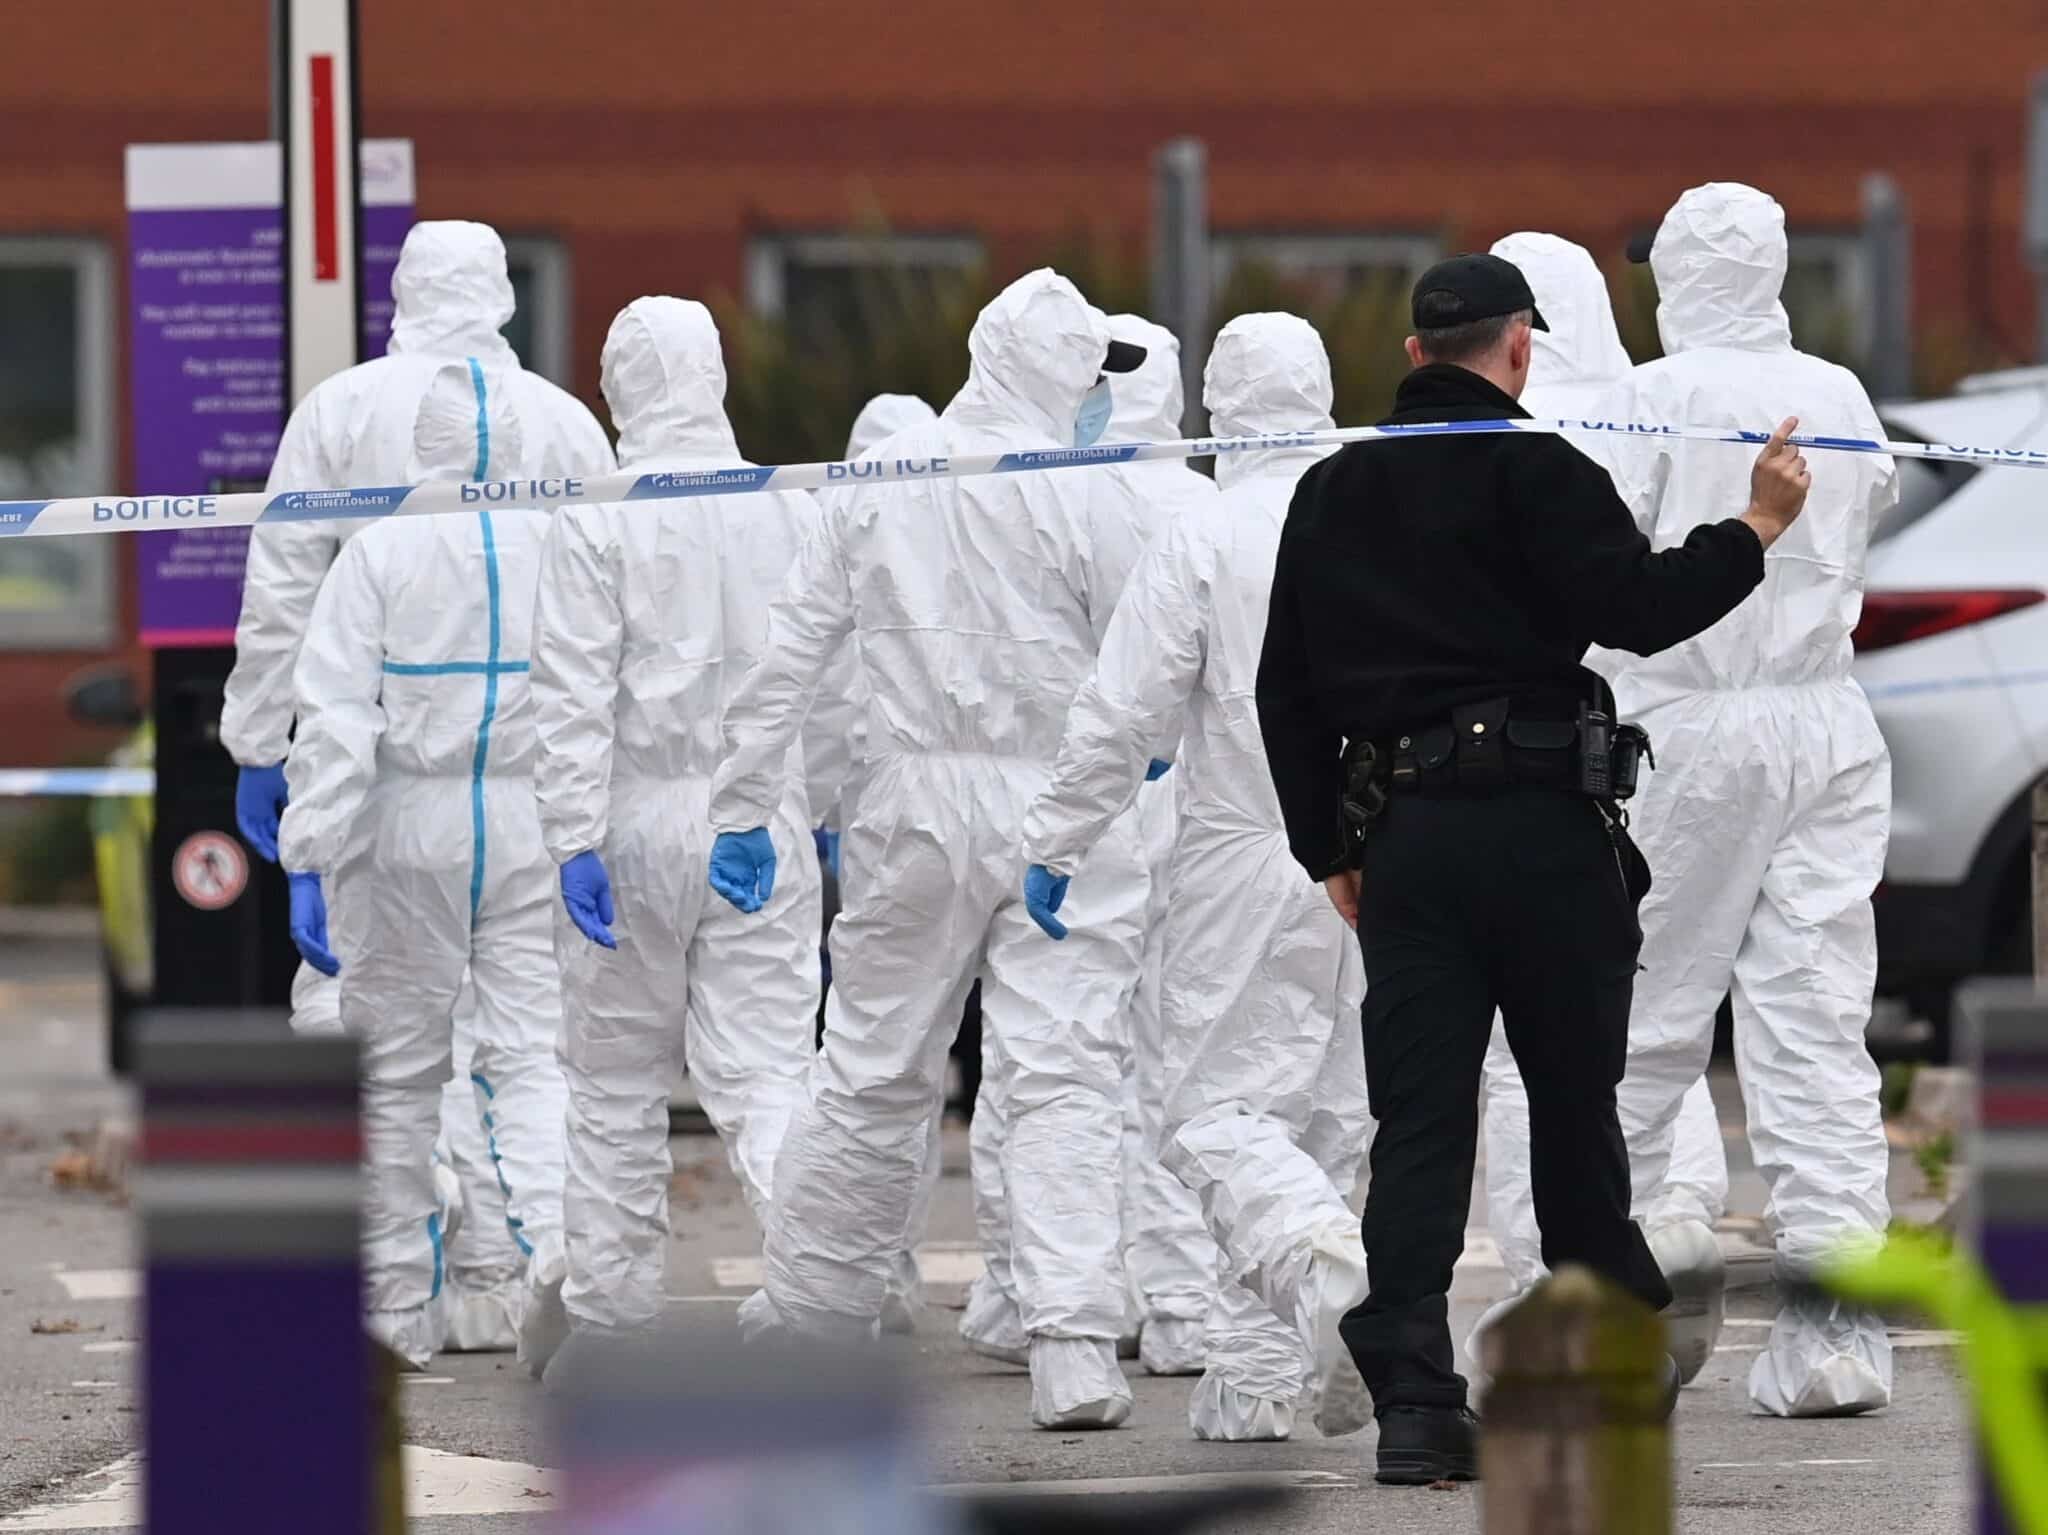 La Policía identifica al hombre fallecido en el presunto ataque terrorista de Liverpool